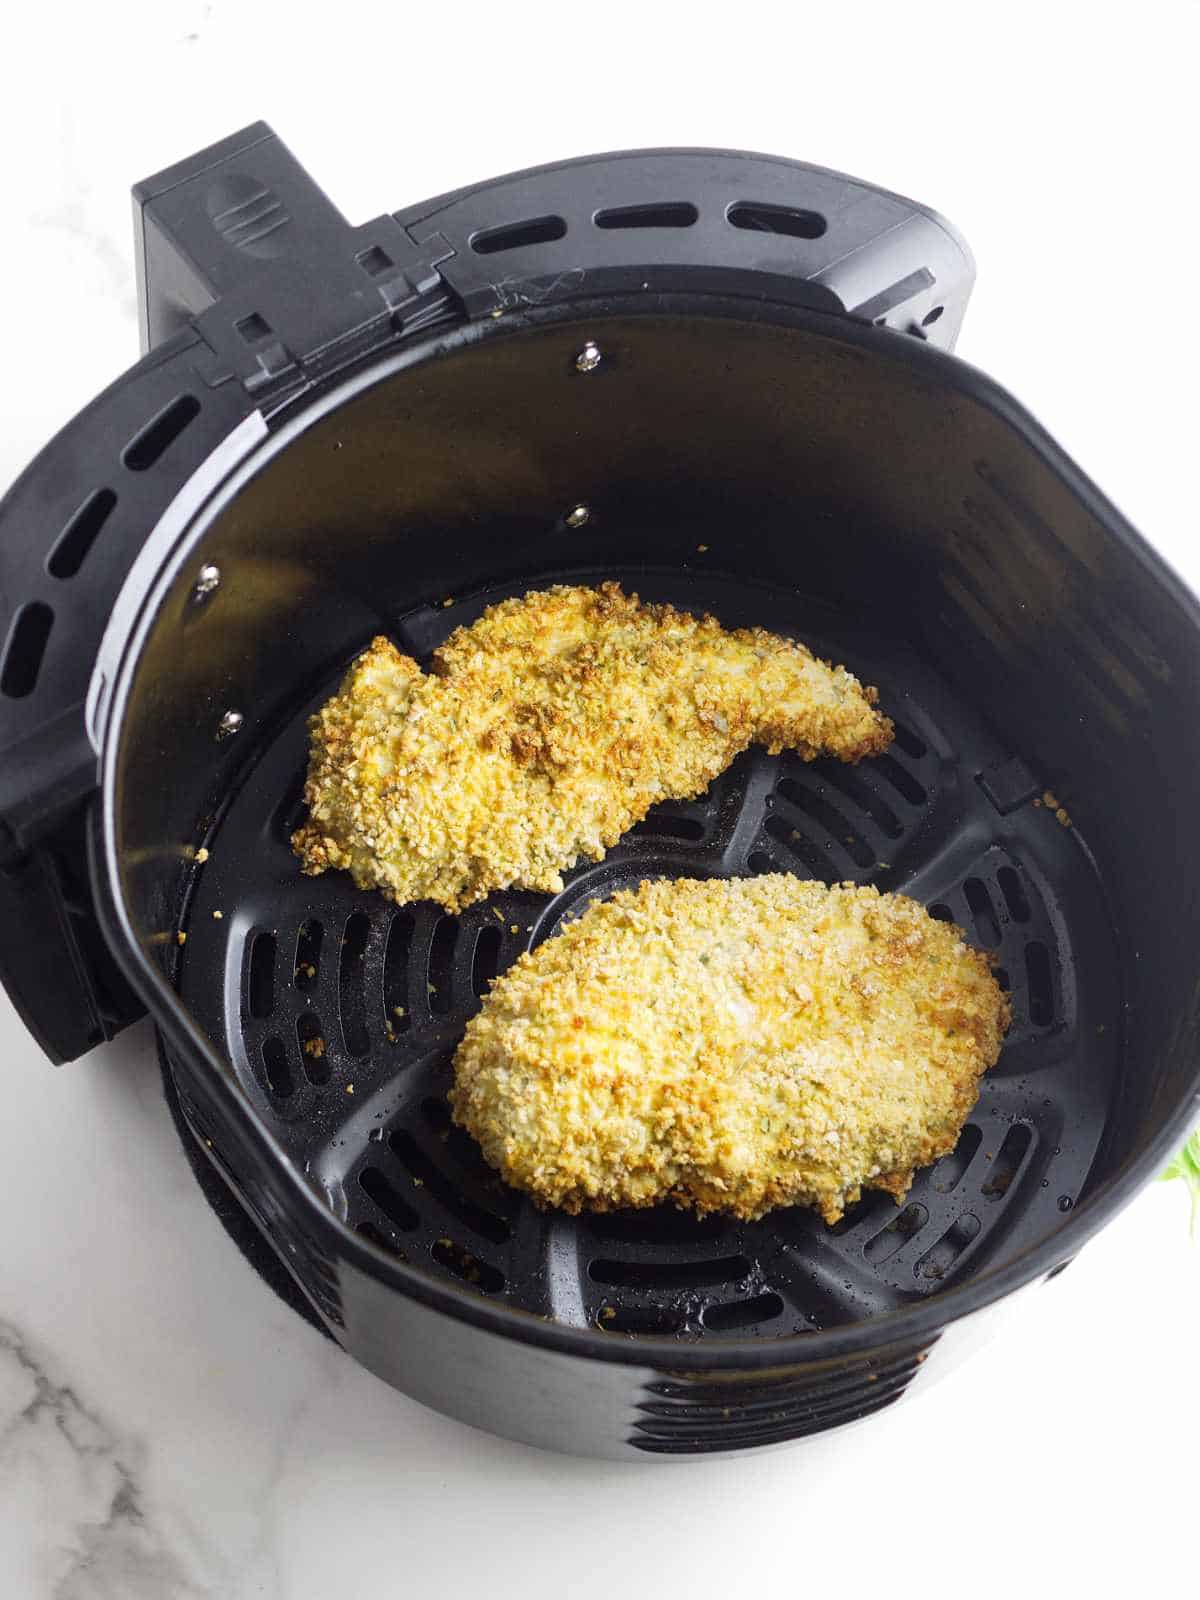 golden crispy air fried chicken cutlets in an air fryer basket.